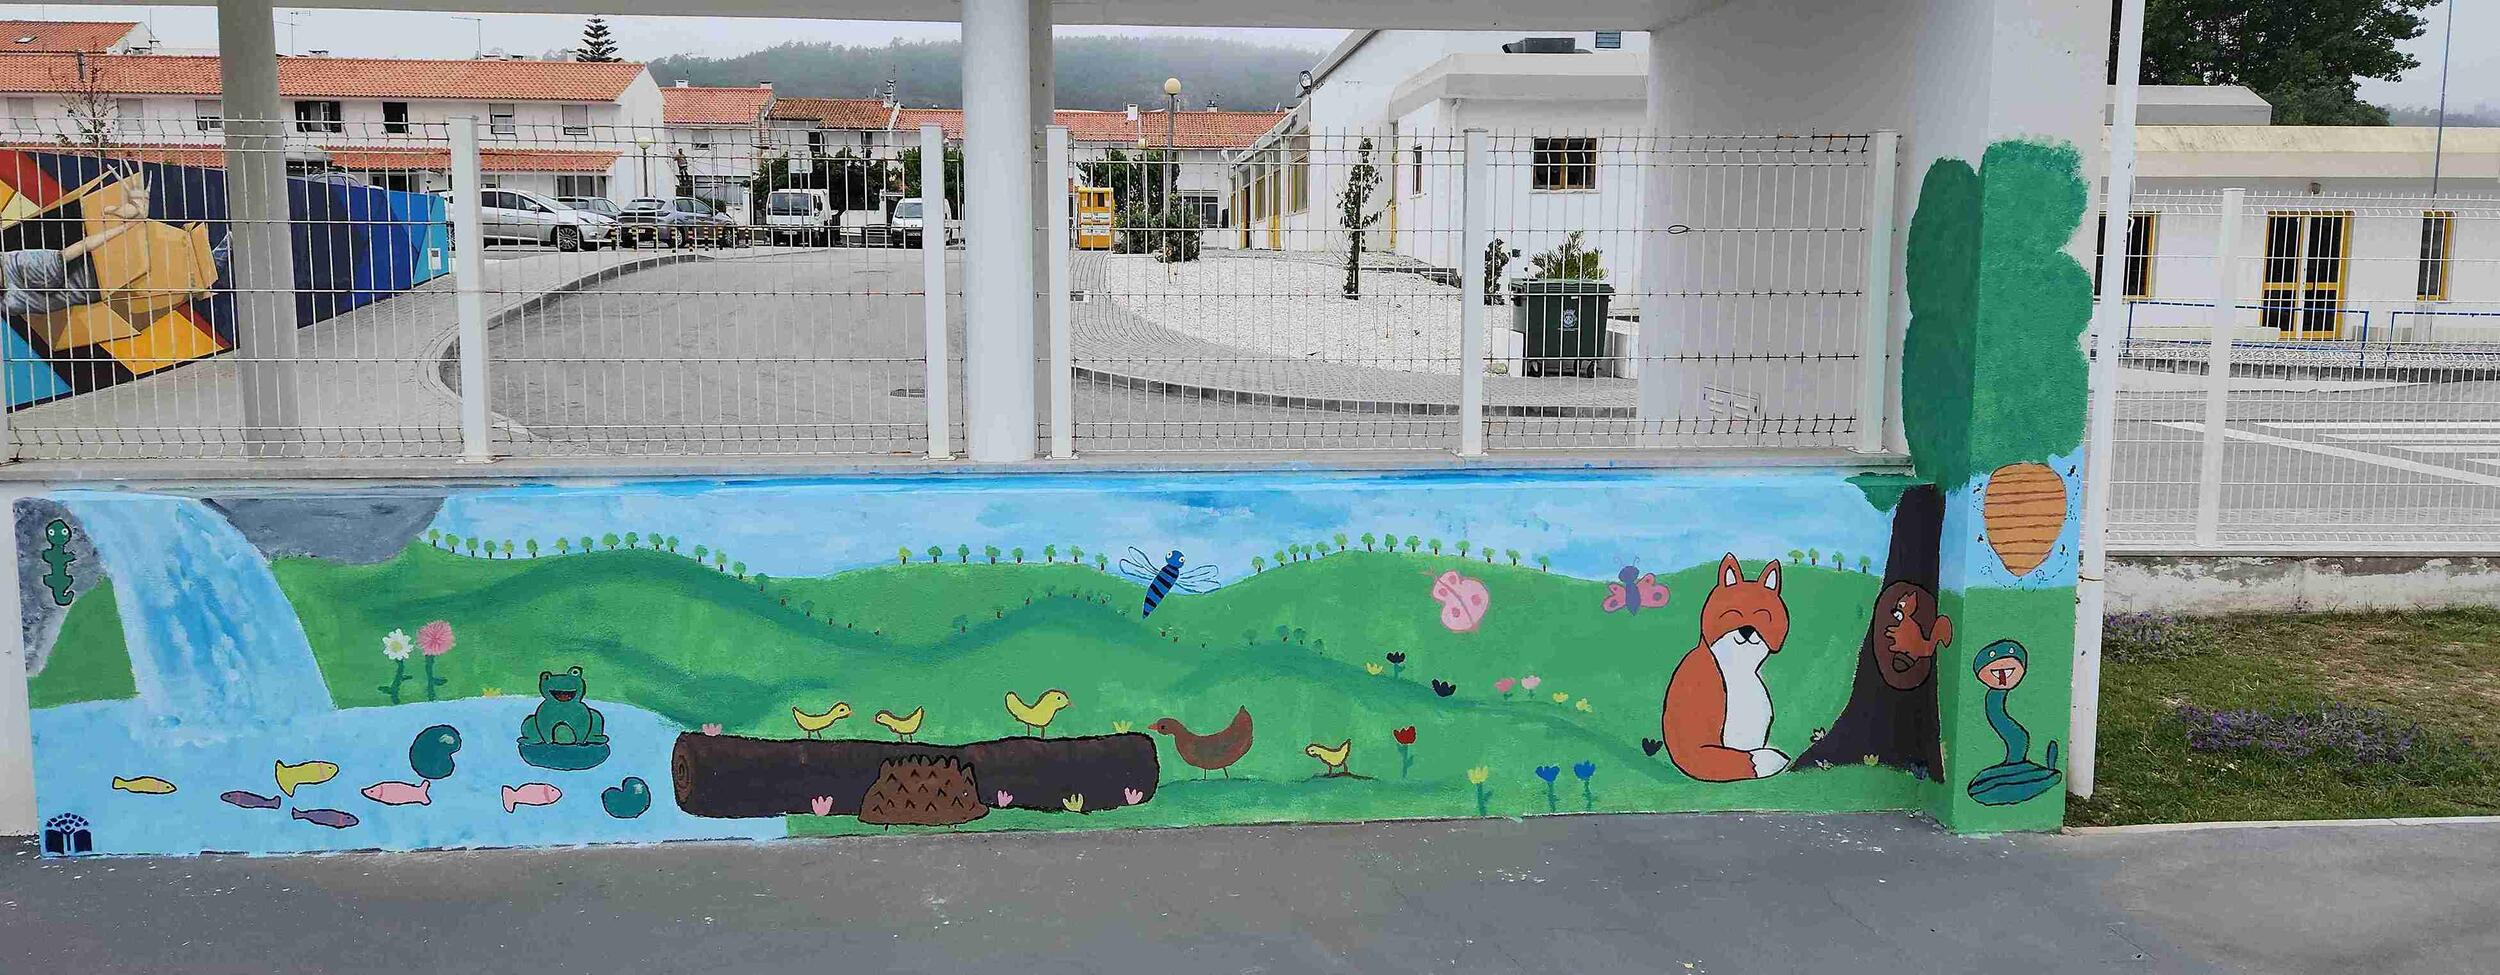 Município da Nazaré premiado pela iniciativa Muros com Vida nas escolas